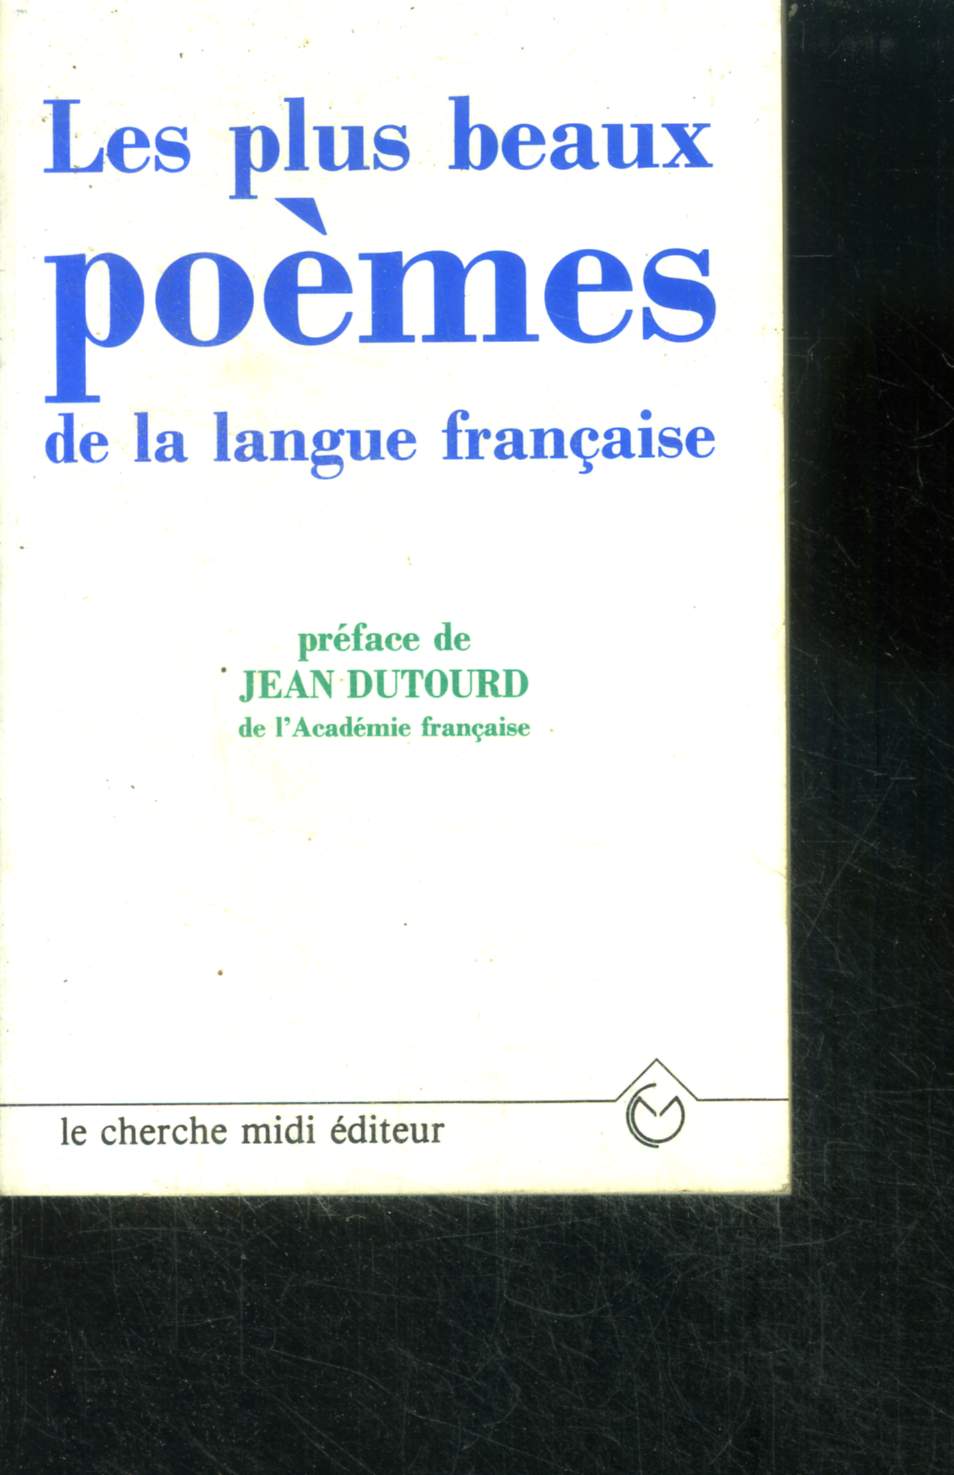 Les plus beaux poemes de la langue francaise